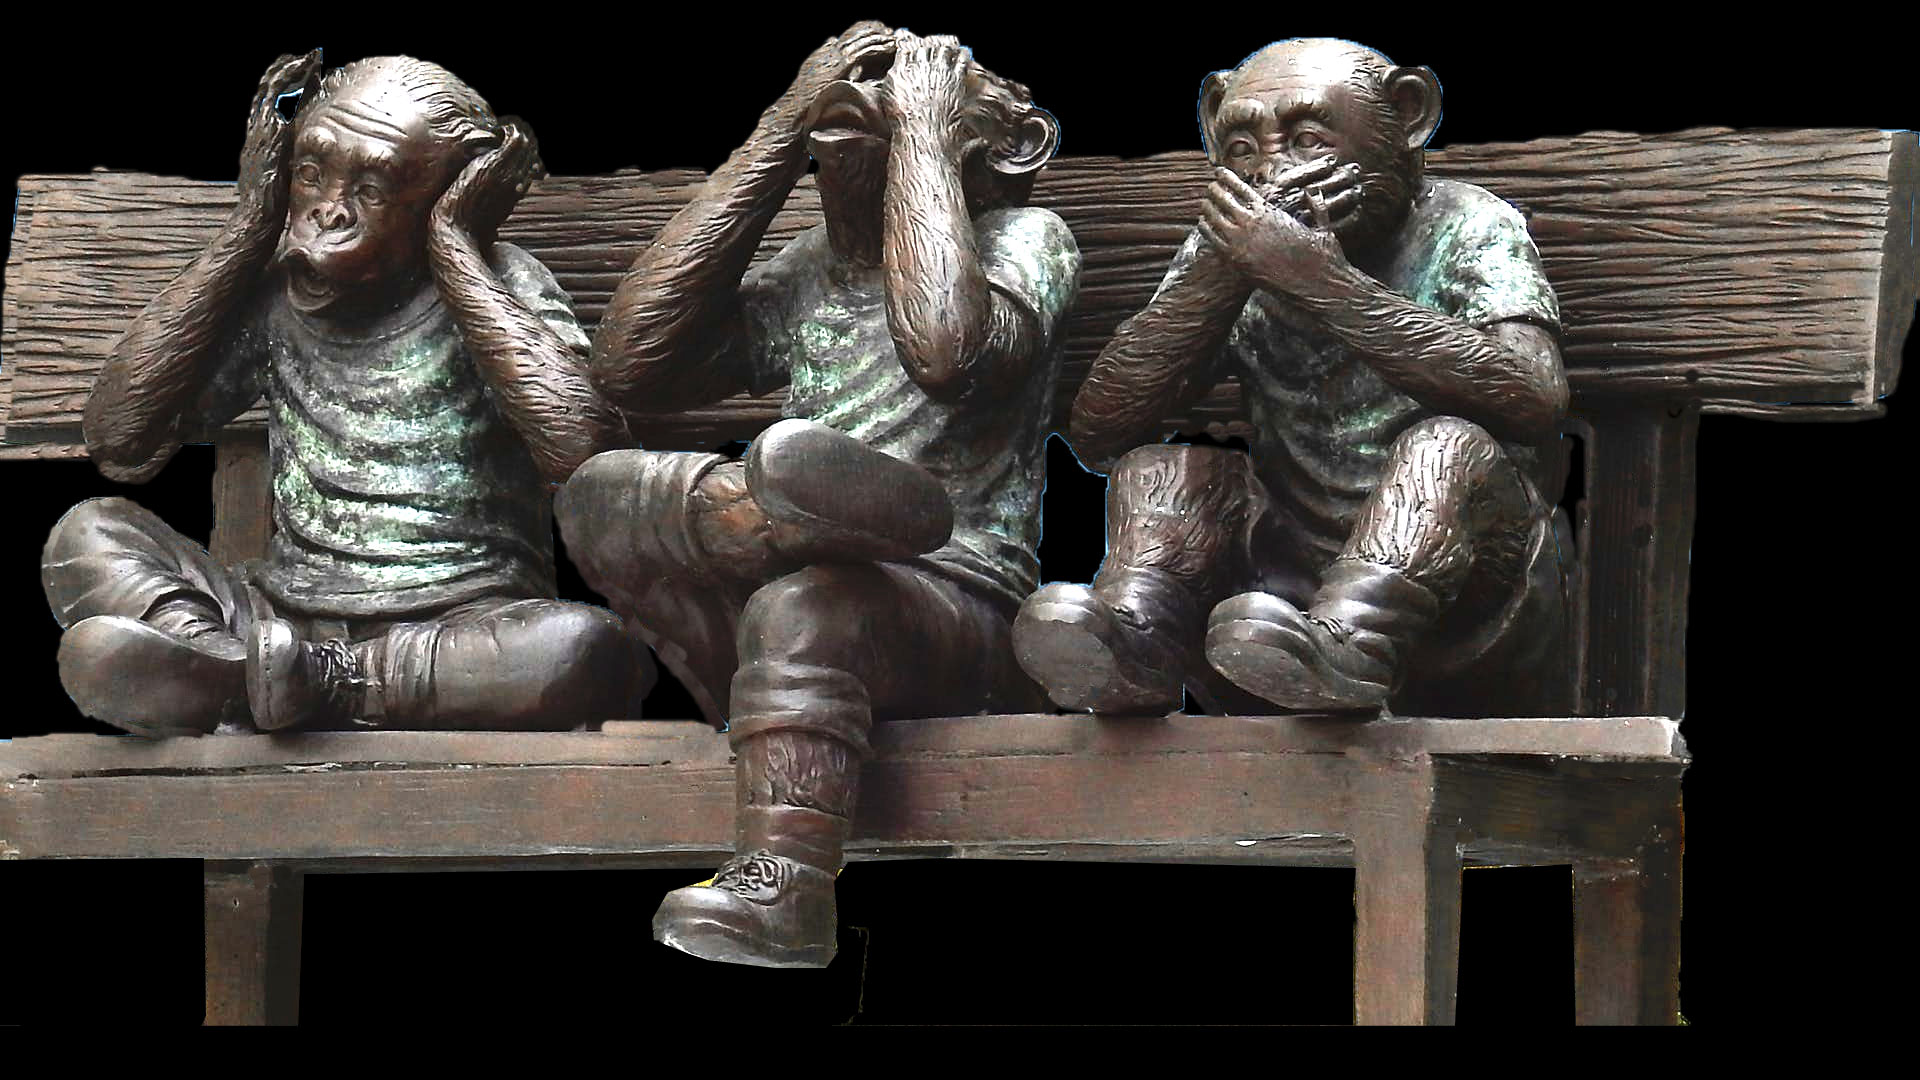 3 monkeys on a bench: ear, see, speak no evil